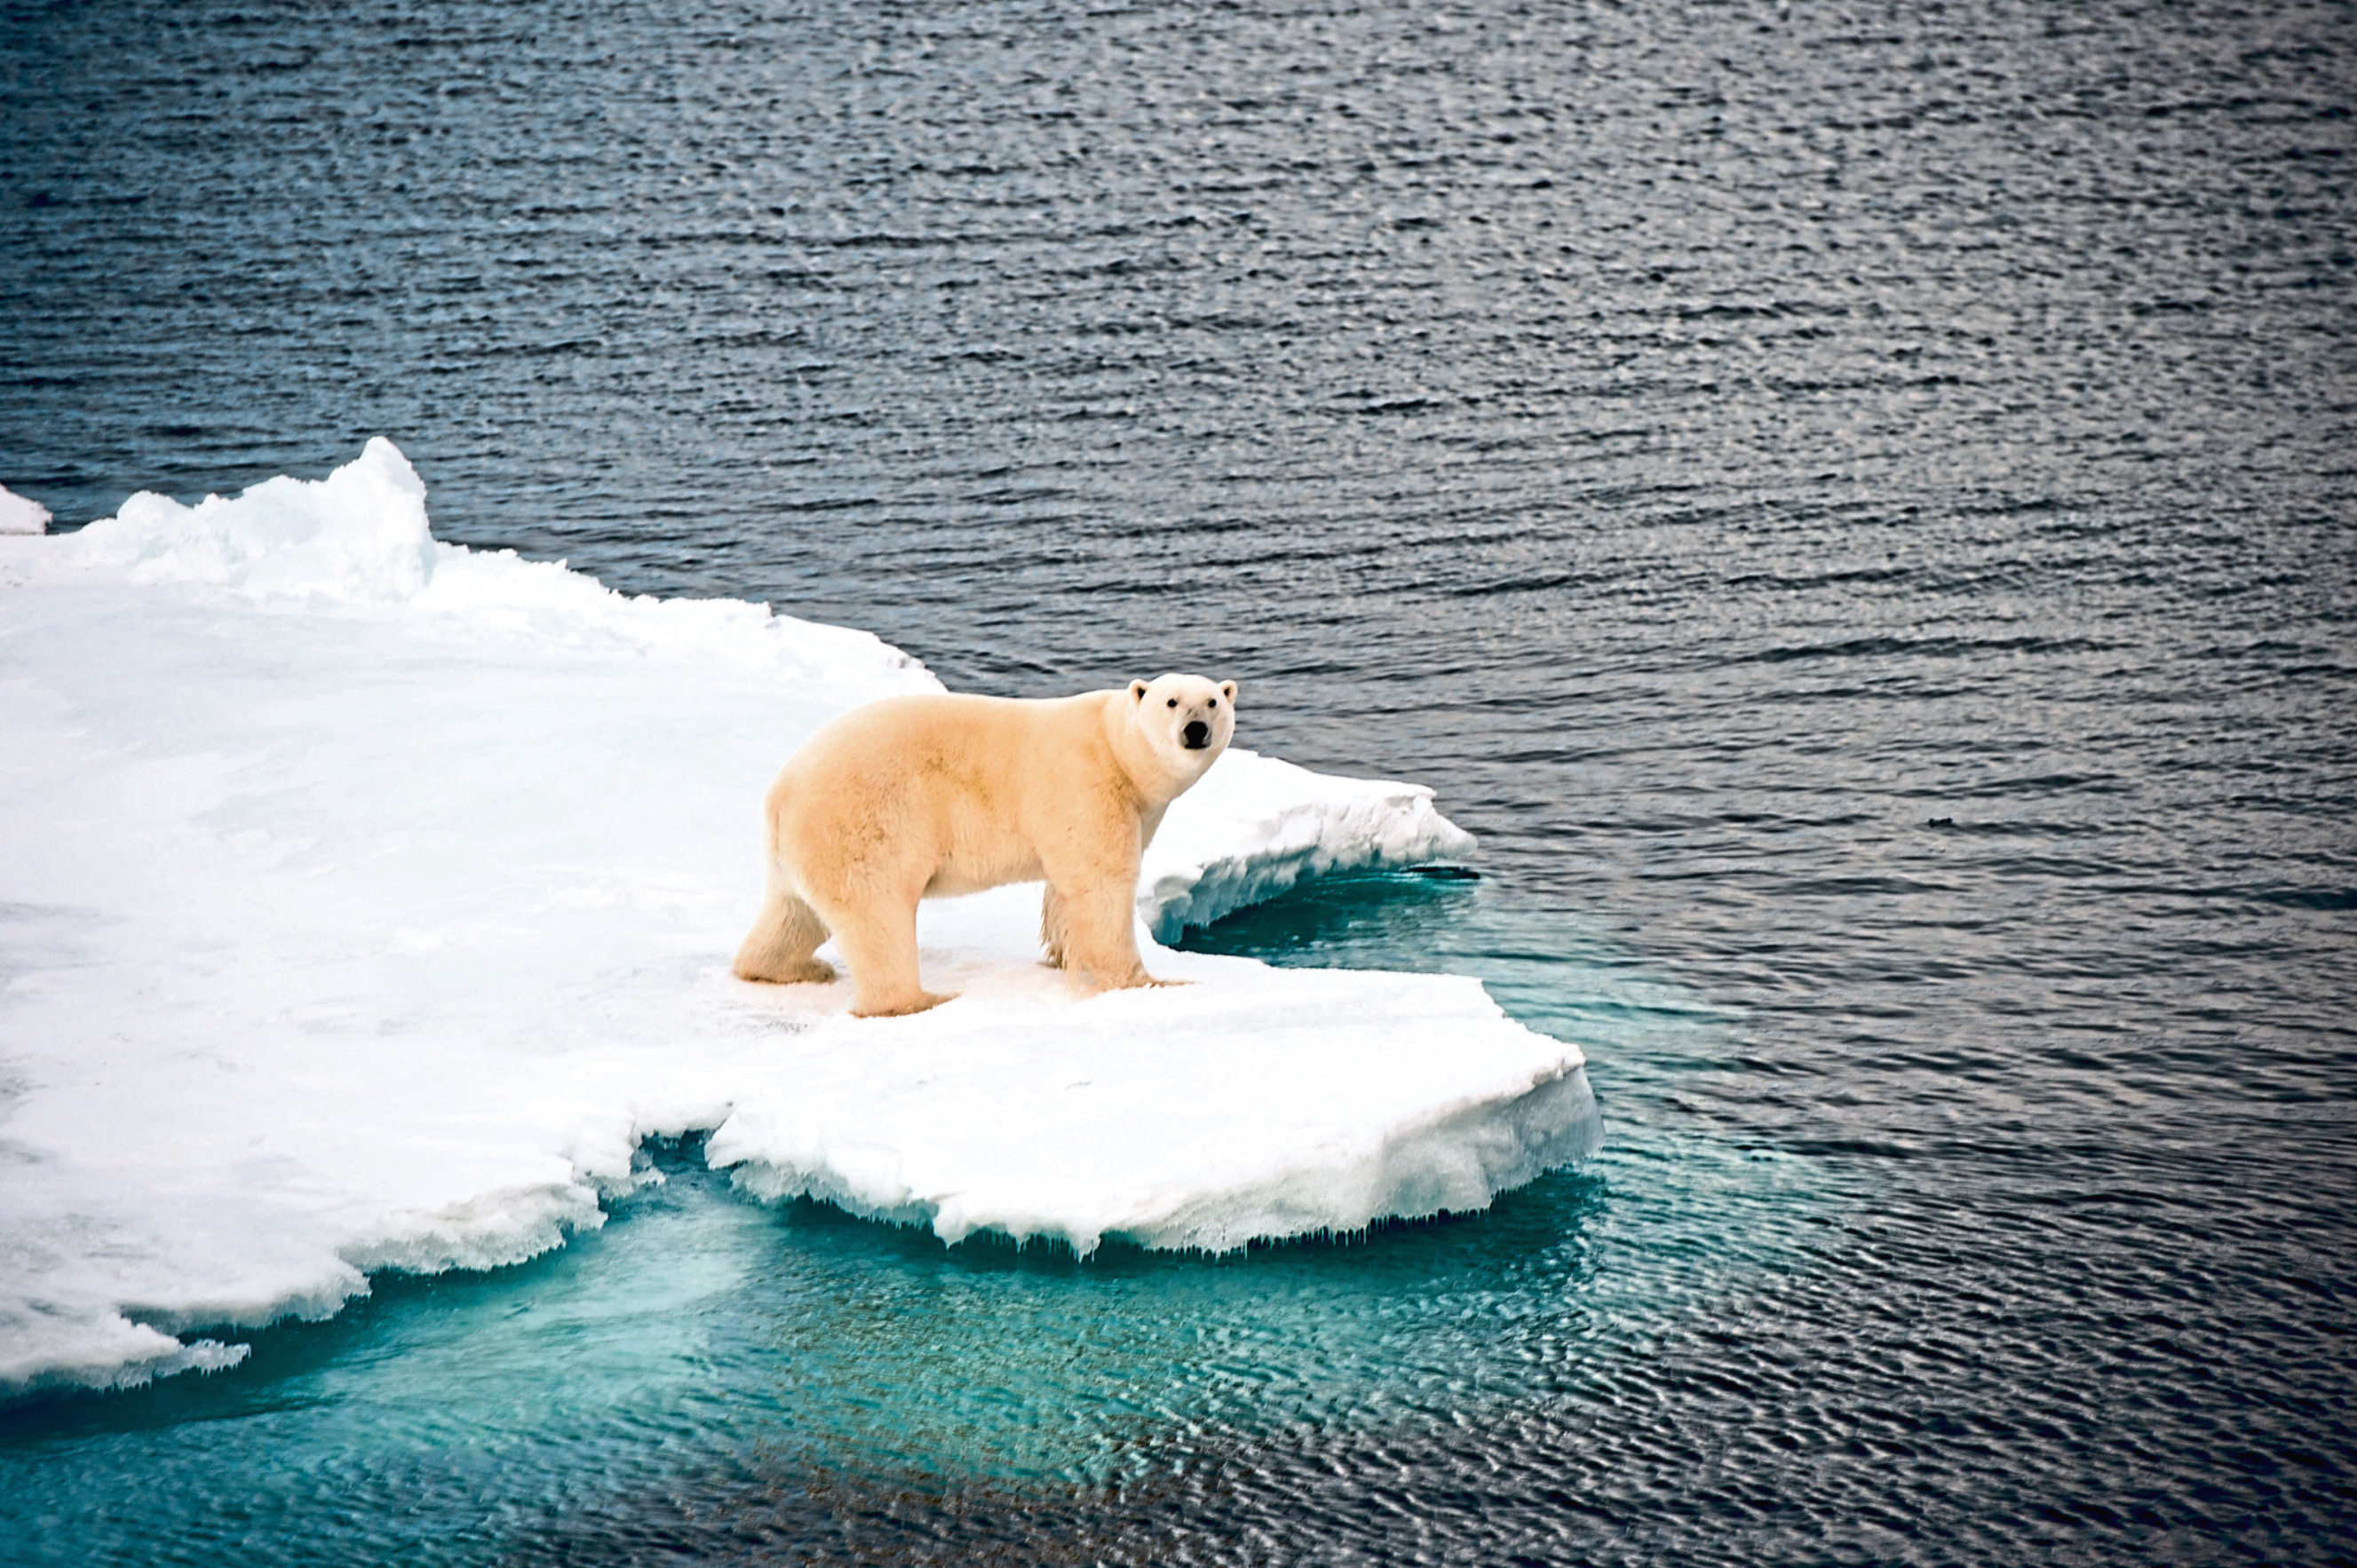 A polar bear in the Arctic